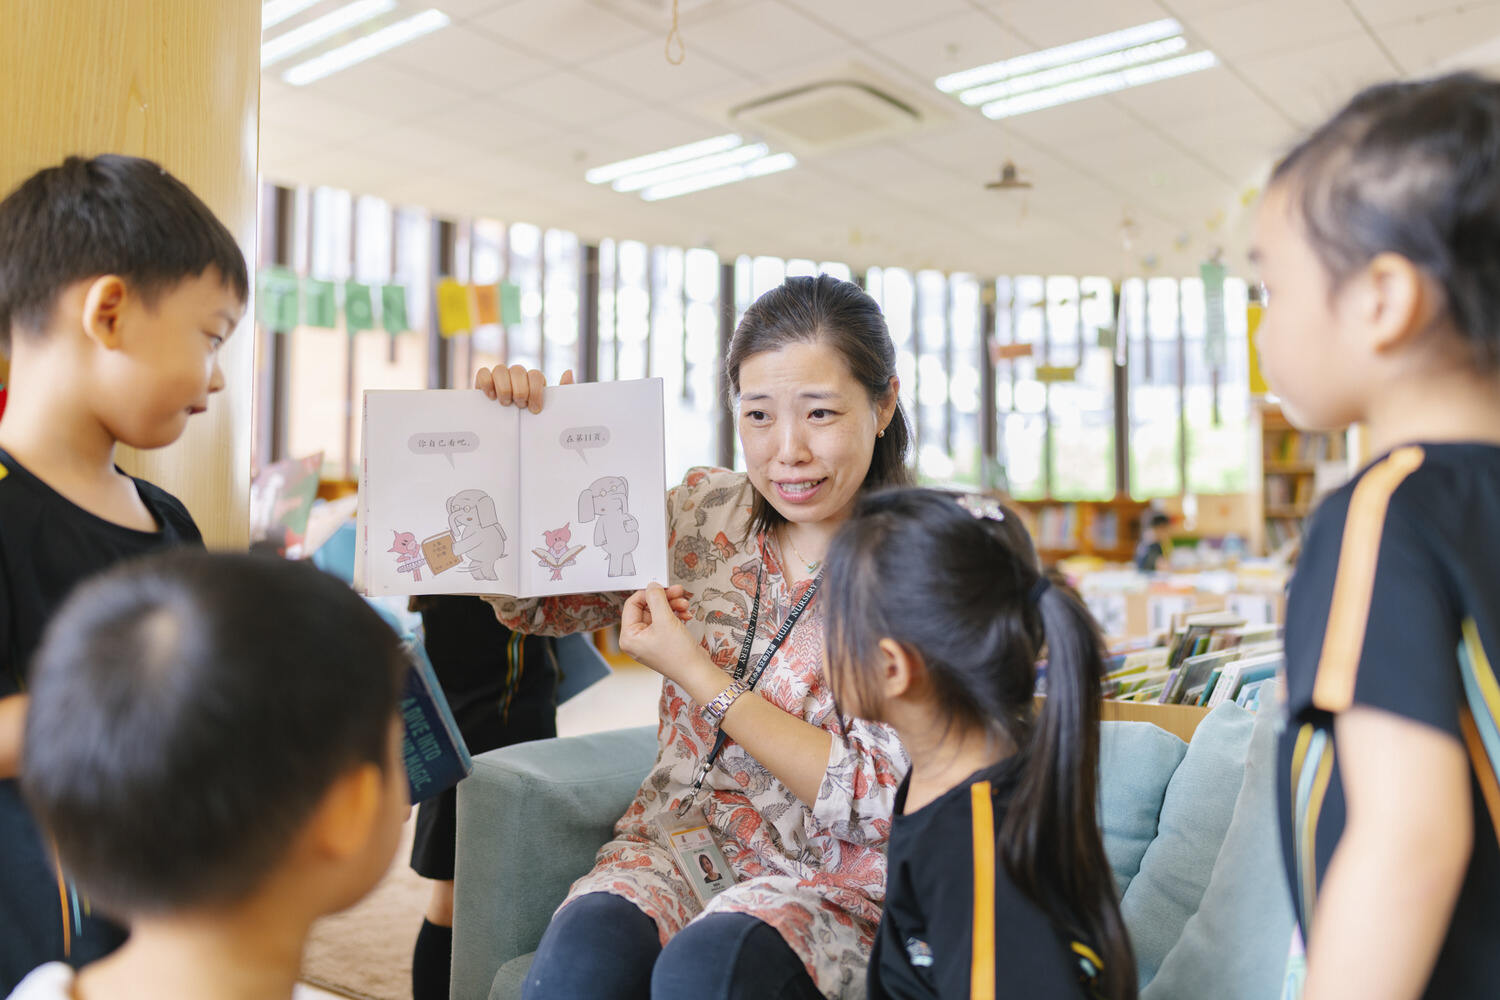 上海惠立幼儿园双语学习空间